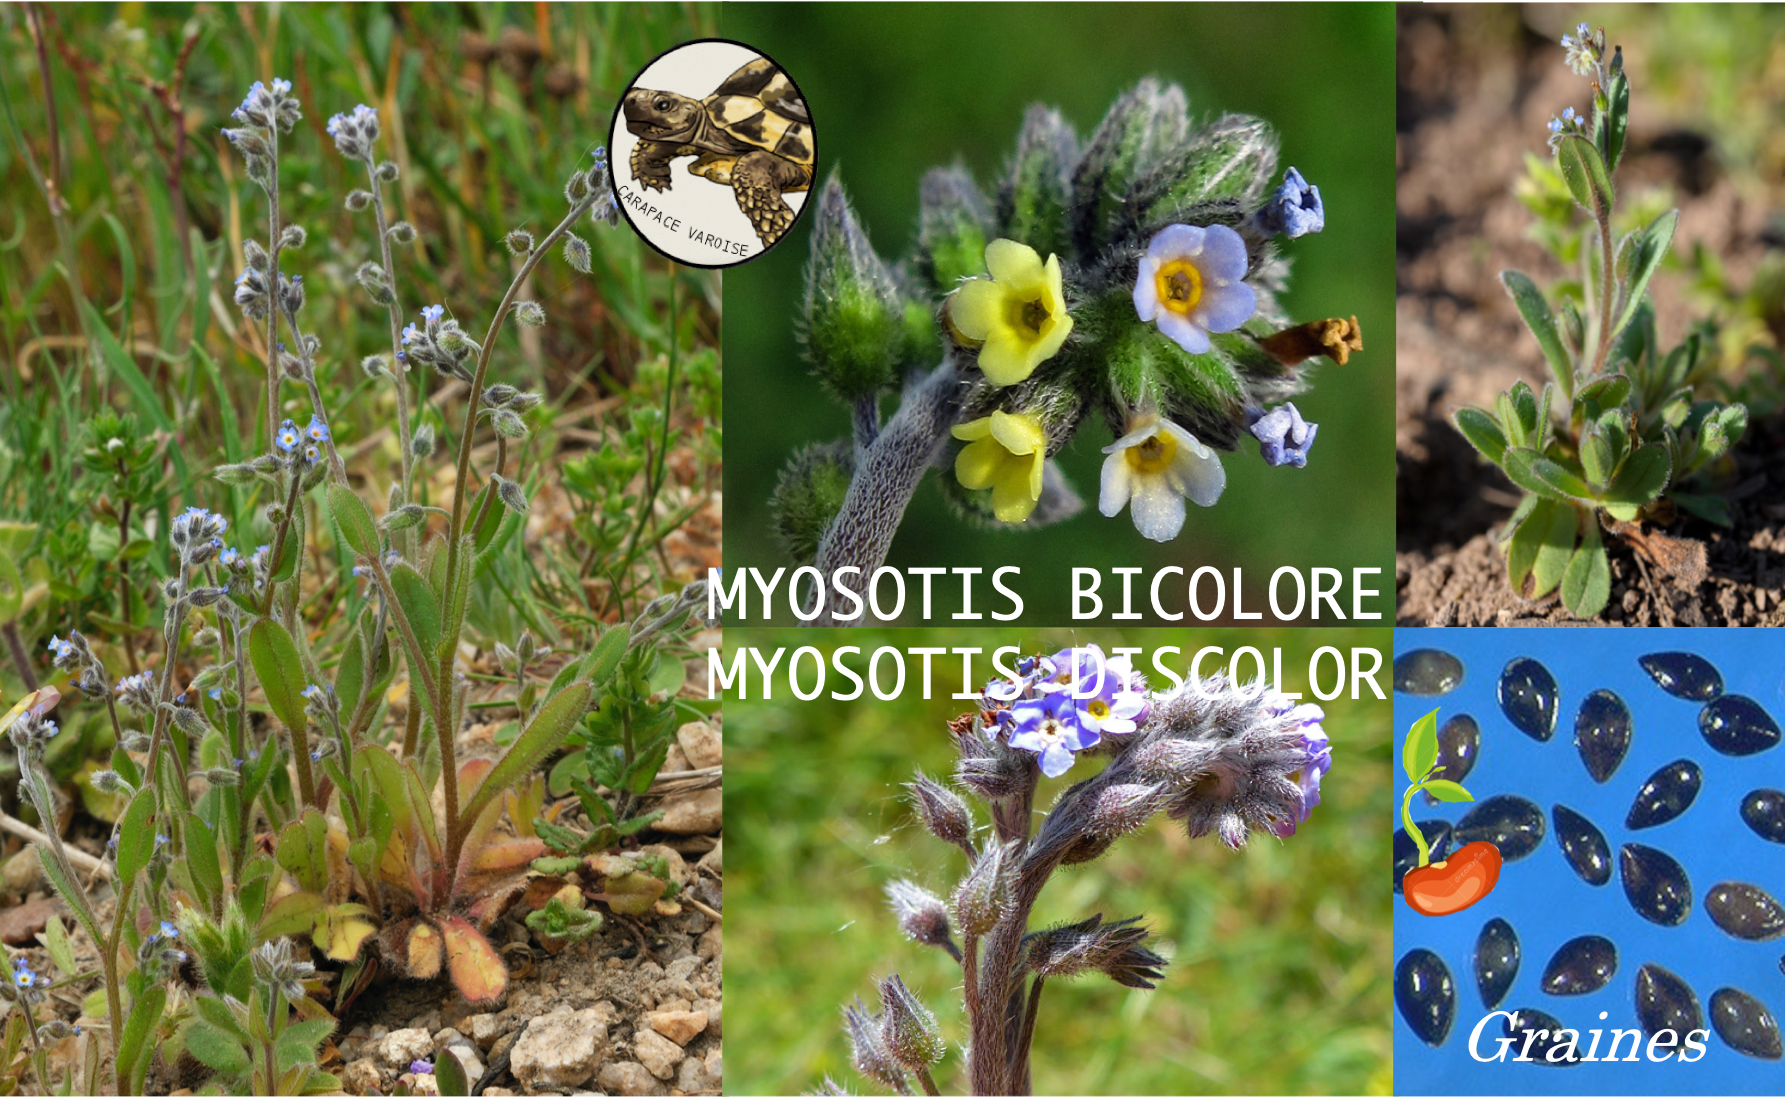 Myosotis bicolore